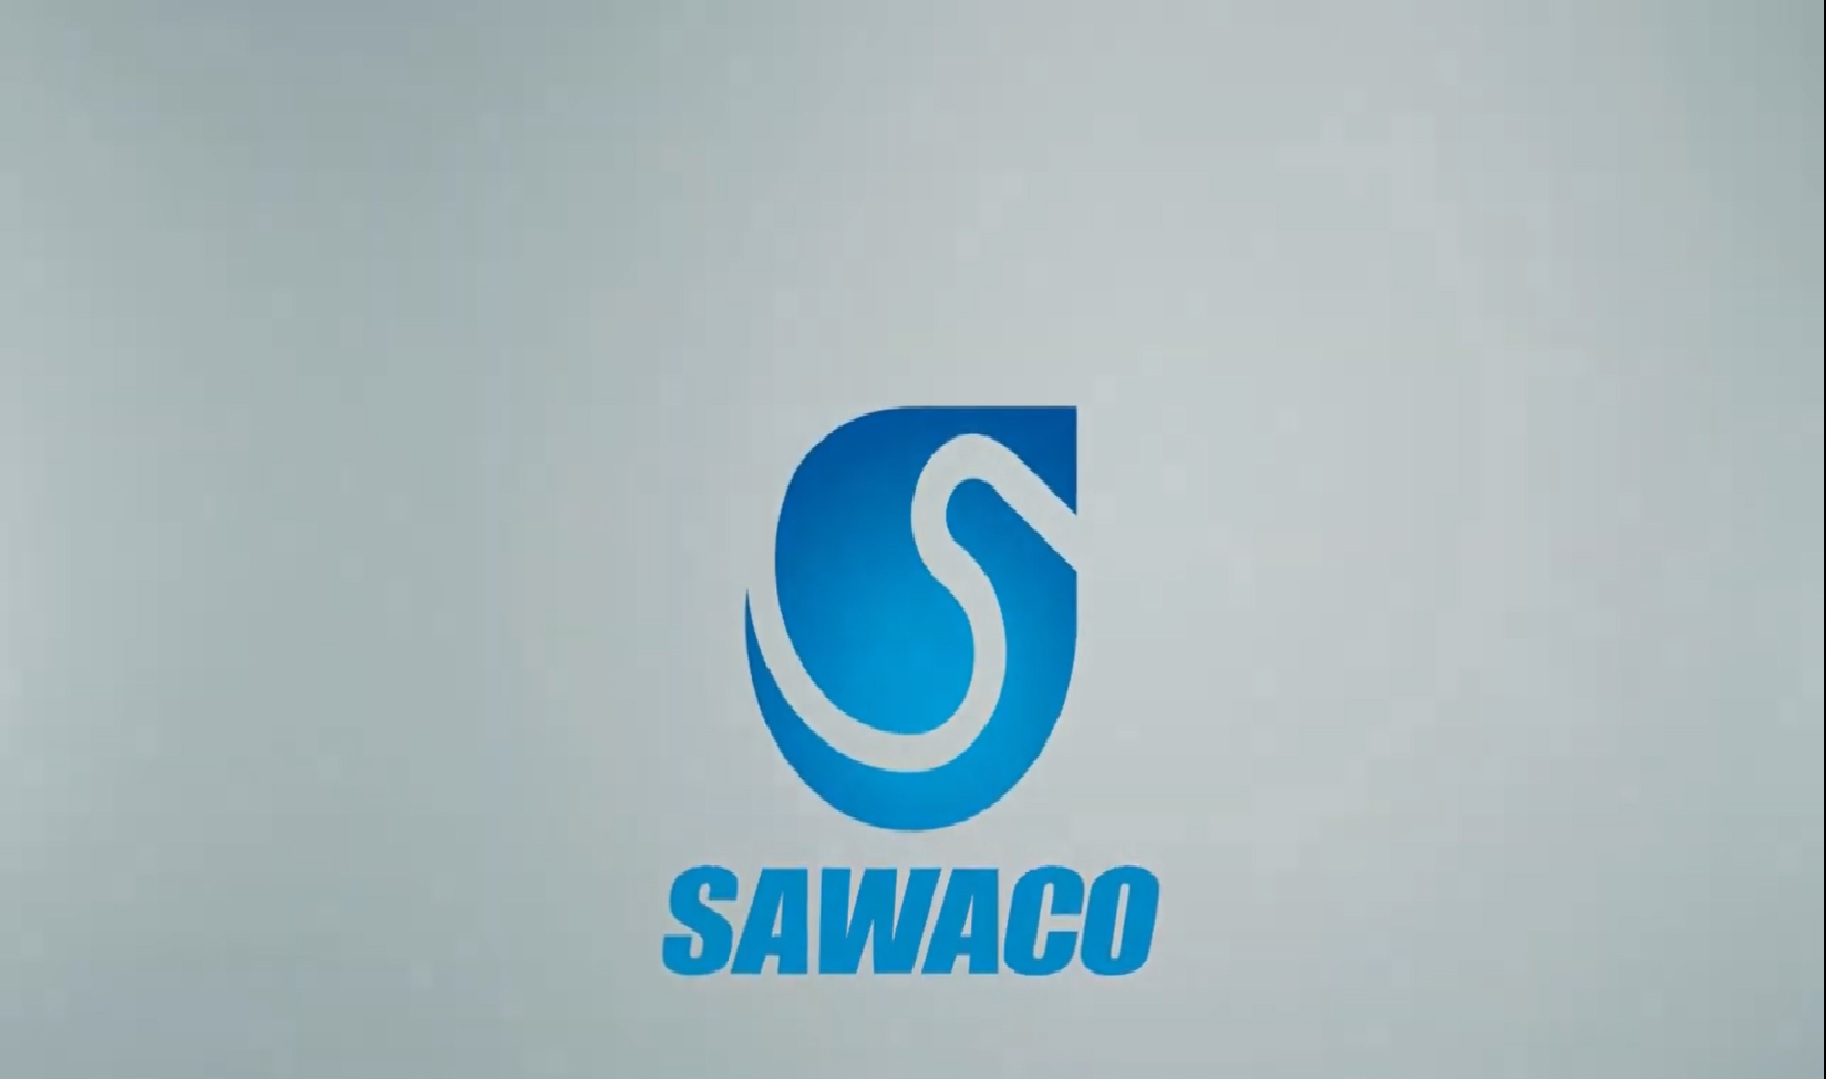 SAWACO Khai thác sử dụng nước ngầm - Lợi bất cập hại